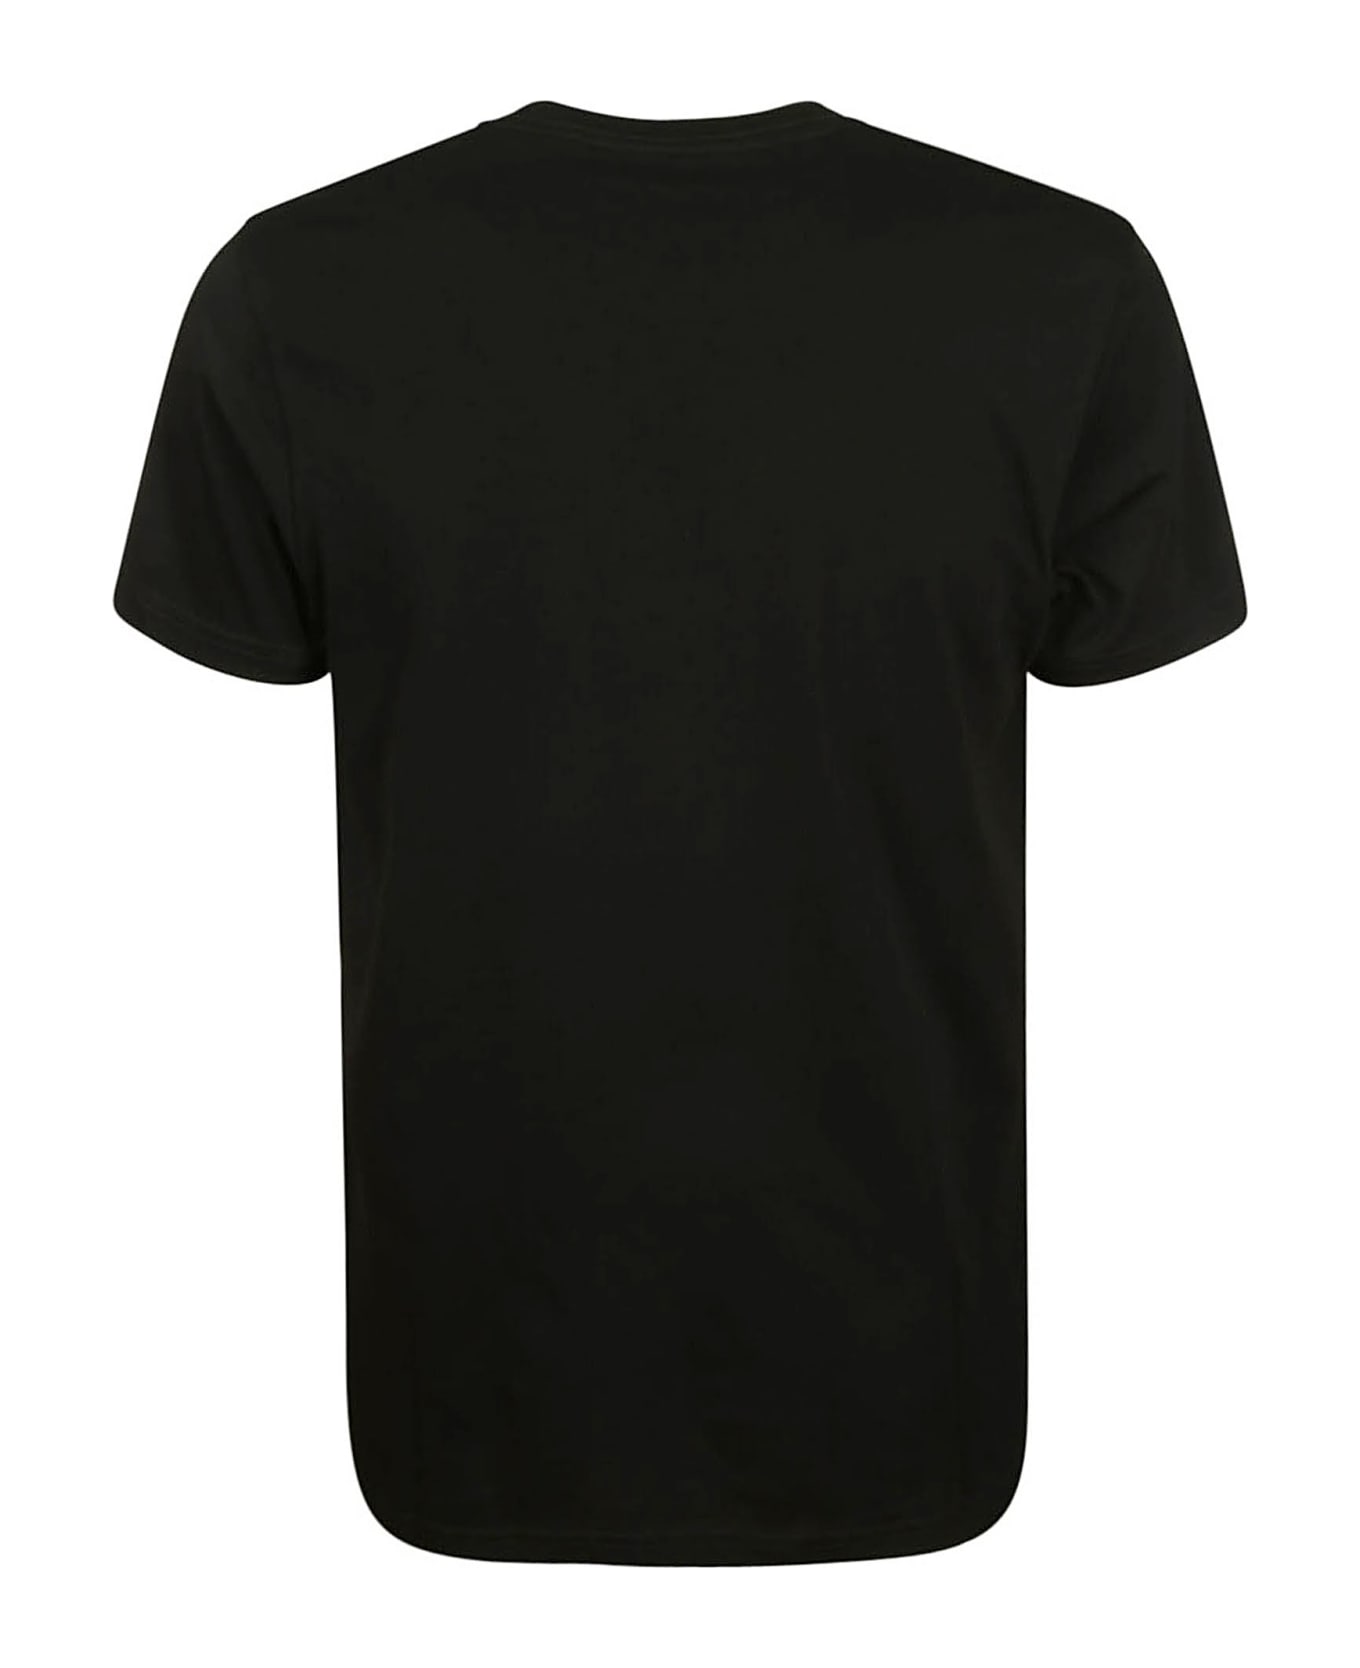 Paul Smith Slim Fit T-shirt B&w Zebra - Black